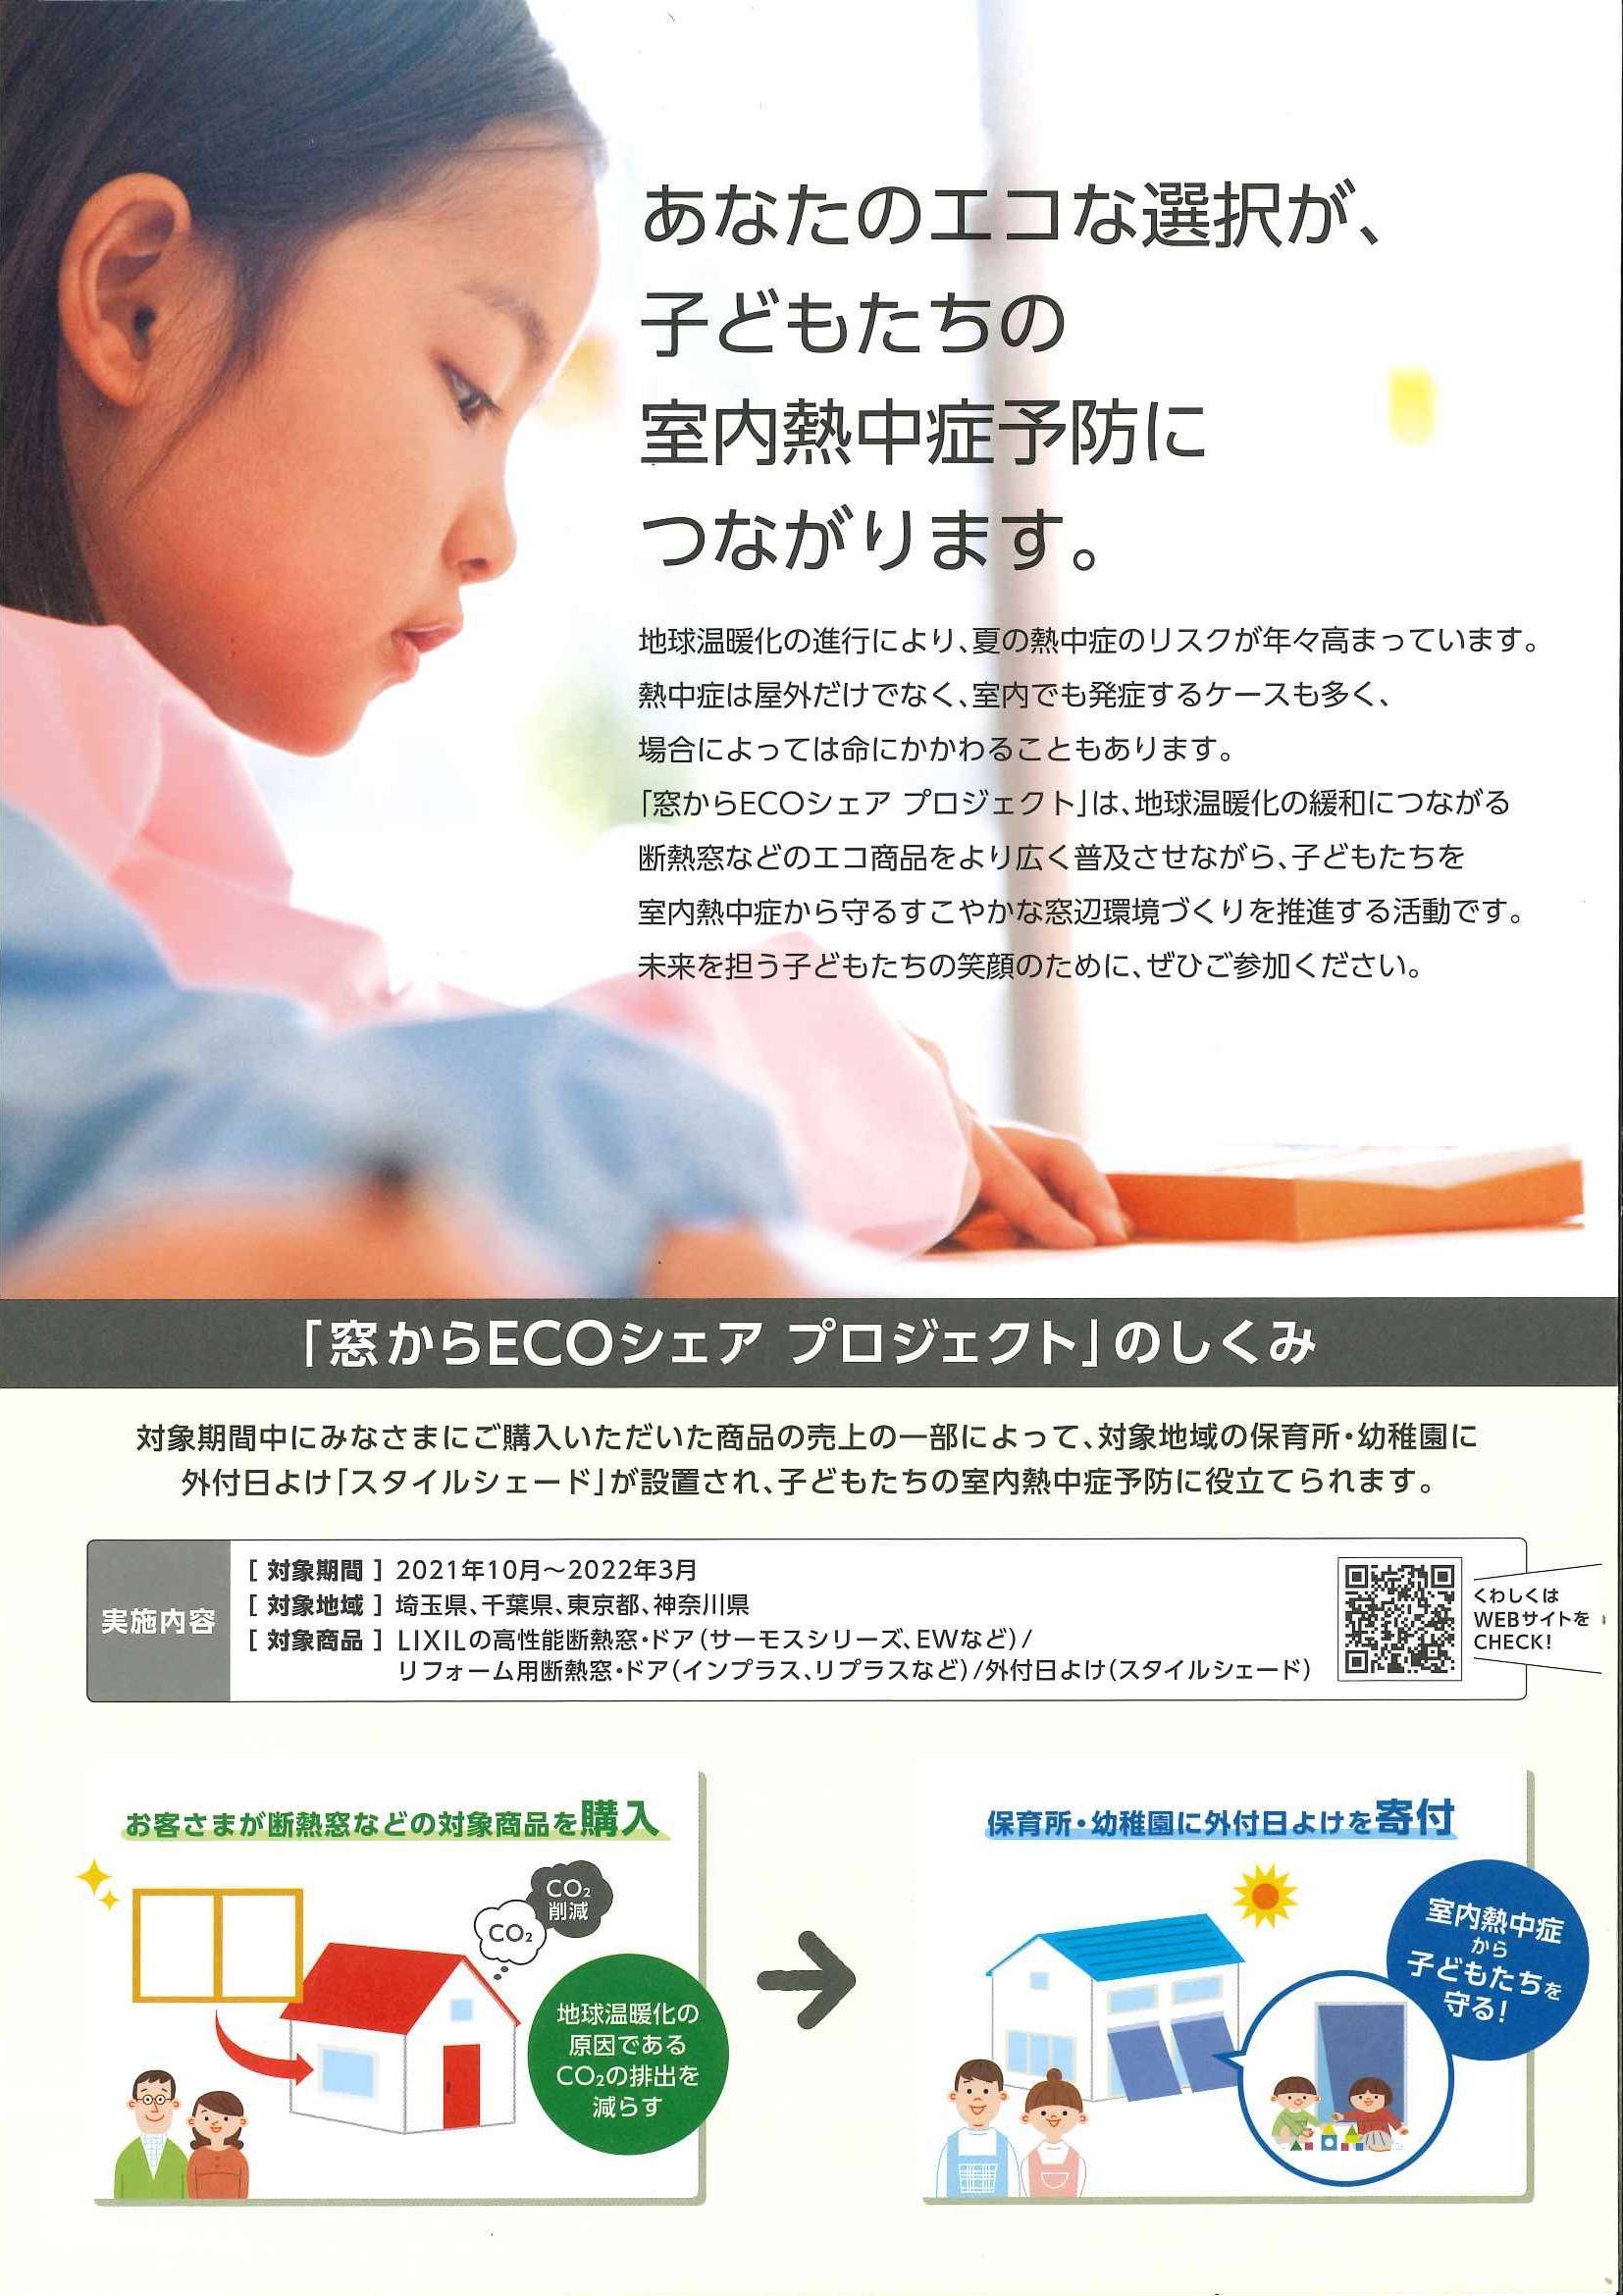 窓からECOシェアプロジェクト 横浜トーヨー住器のイベントキャンペーン 写真2